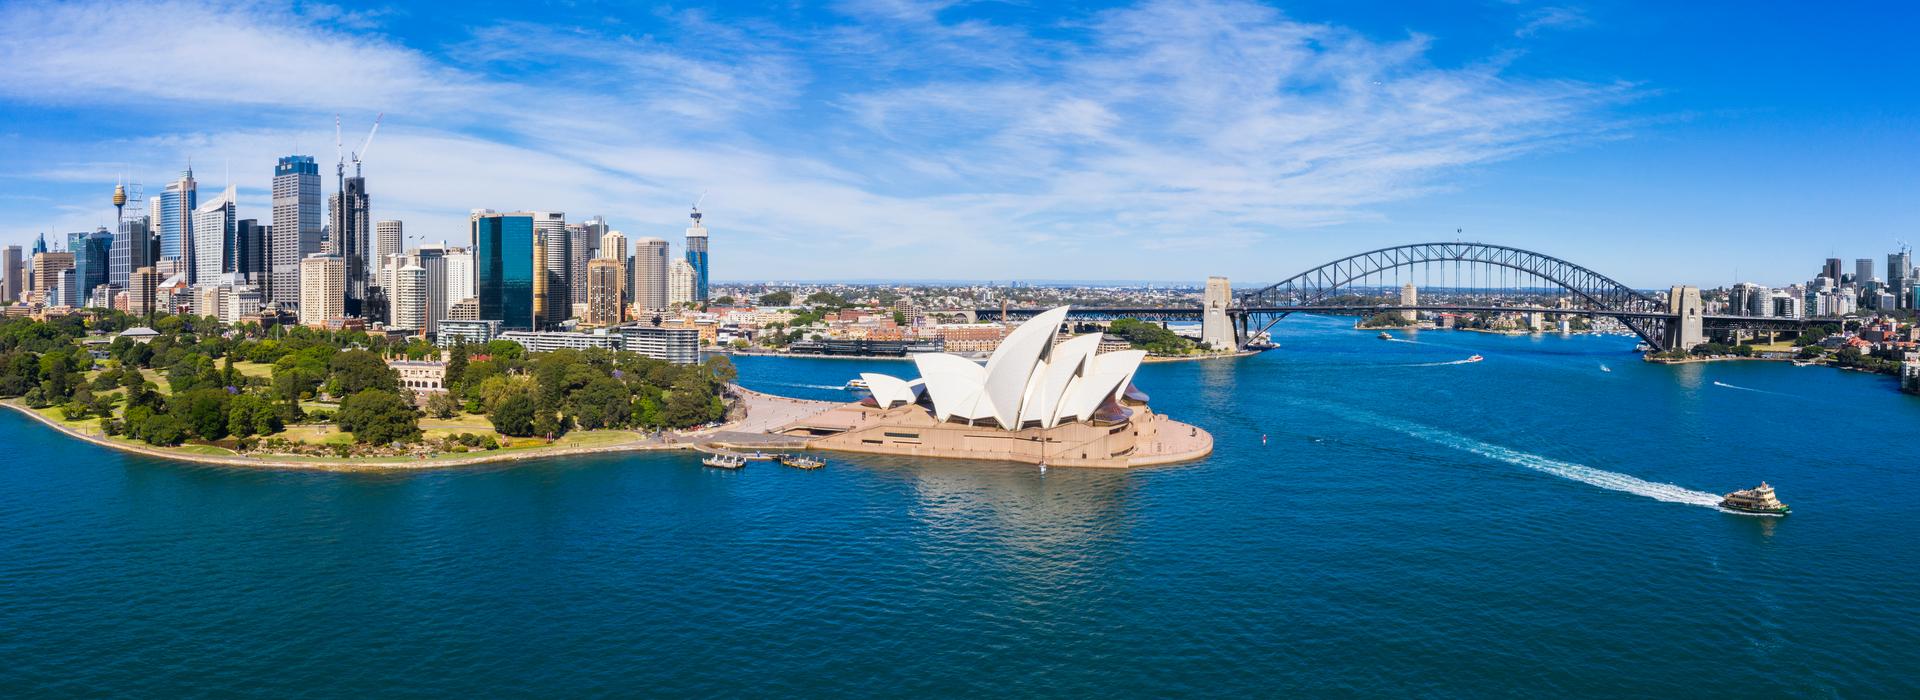 Sydney, Australien, Australien und Ozeanien